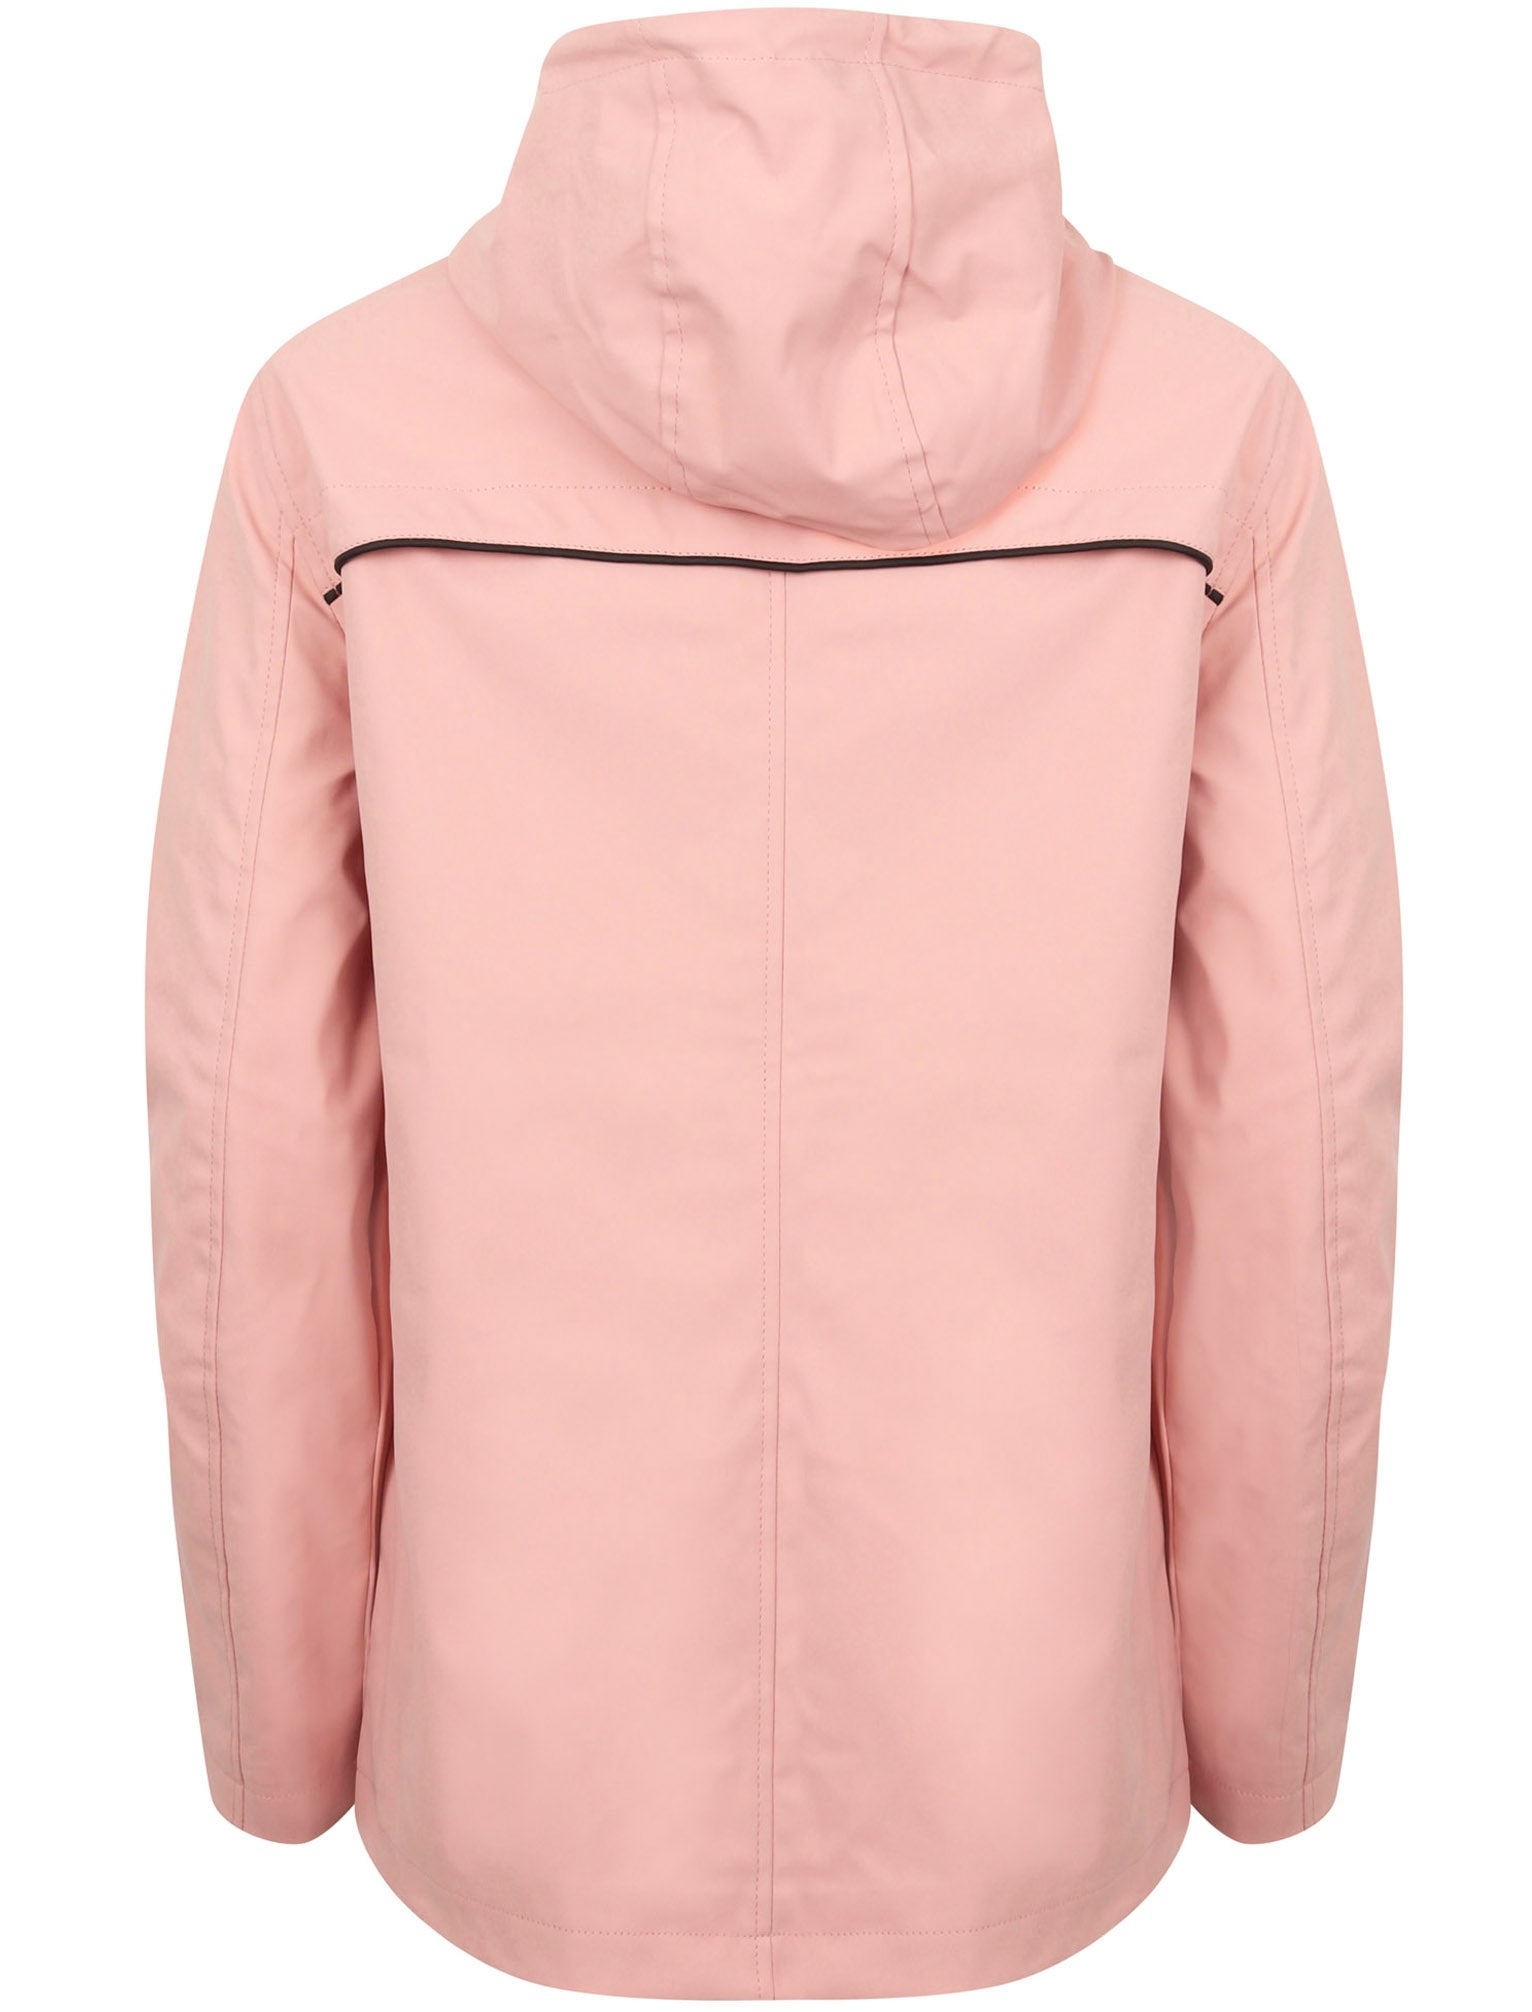 pink hooded rain mac